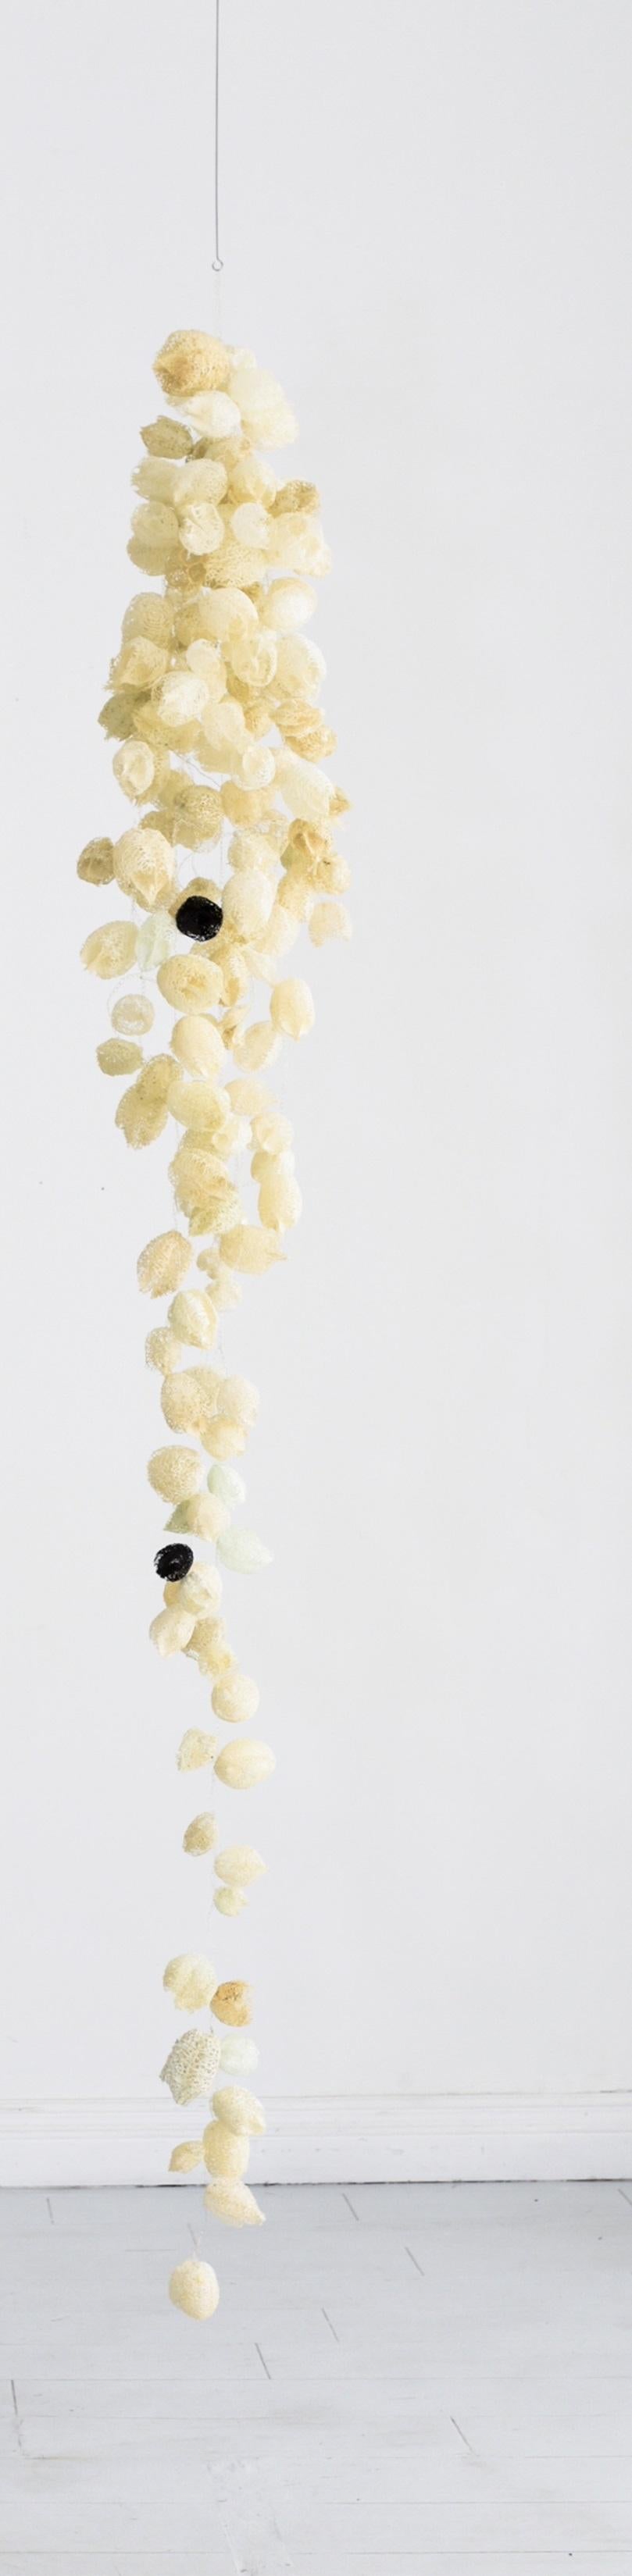 Hängeskulptur aus schwarzer Perle von Karolina Maszkiewicz
Einzigartig.
Abmessungen: T 33 x B 33 x H 200,7 cm. 
MATERIALIEN: Metalldraht und Samenschoten von Wildgurken.

Karolina Maszkiewicz ist eine in Polen geborene und in Los Angeles lebende